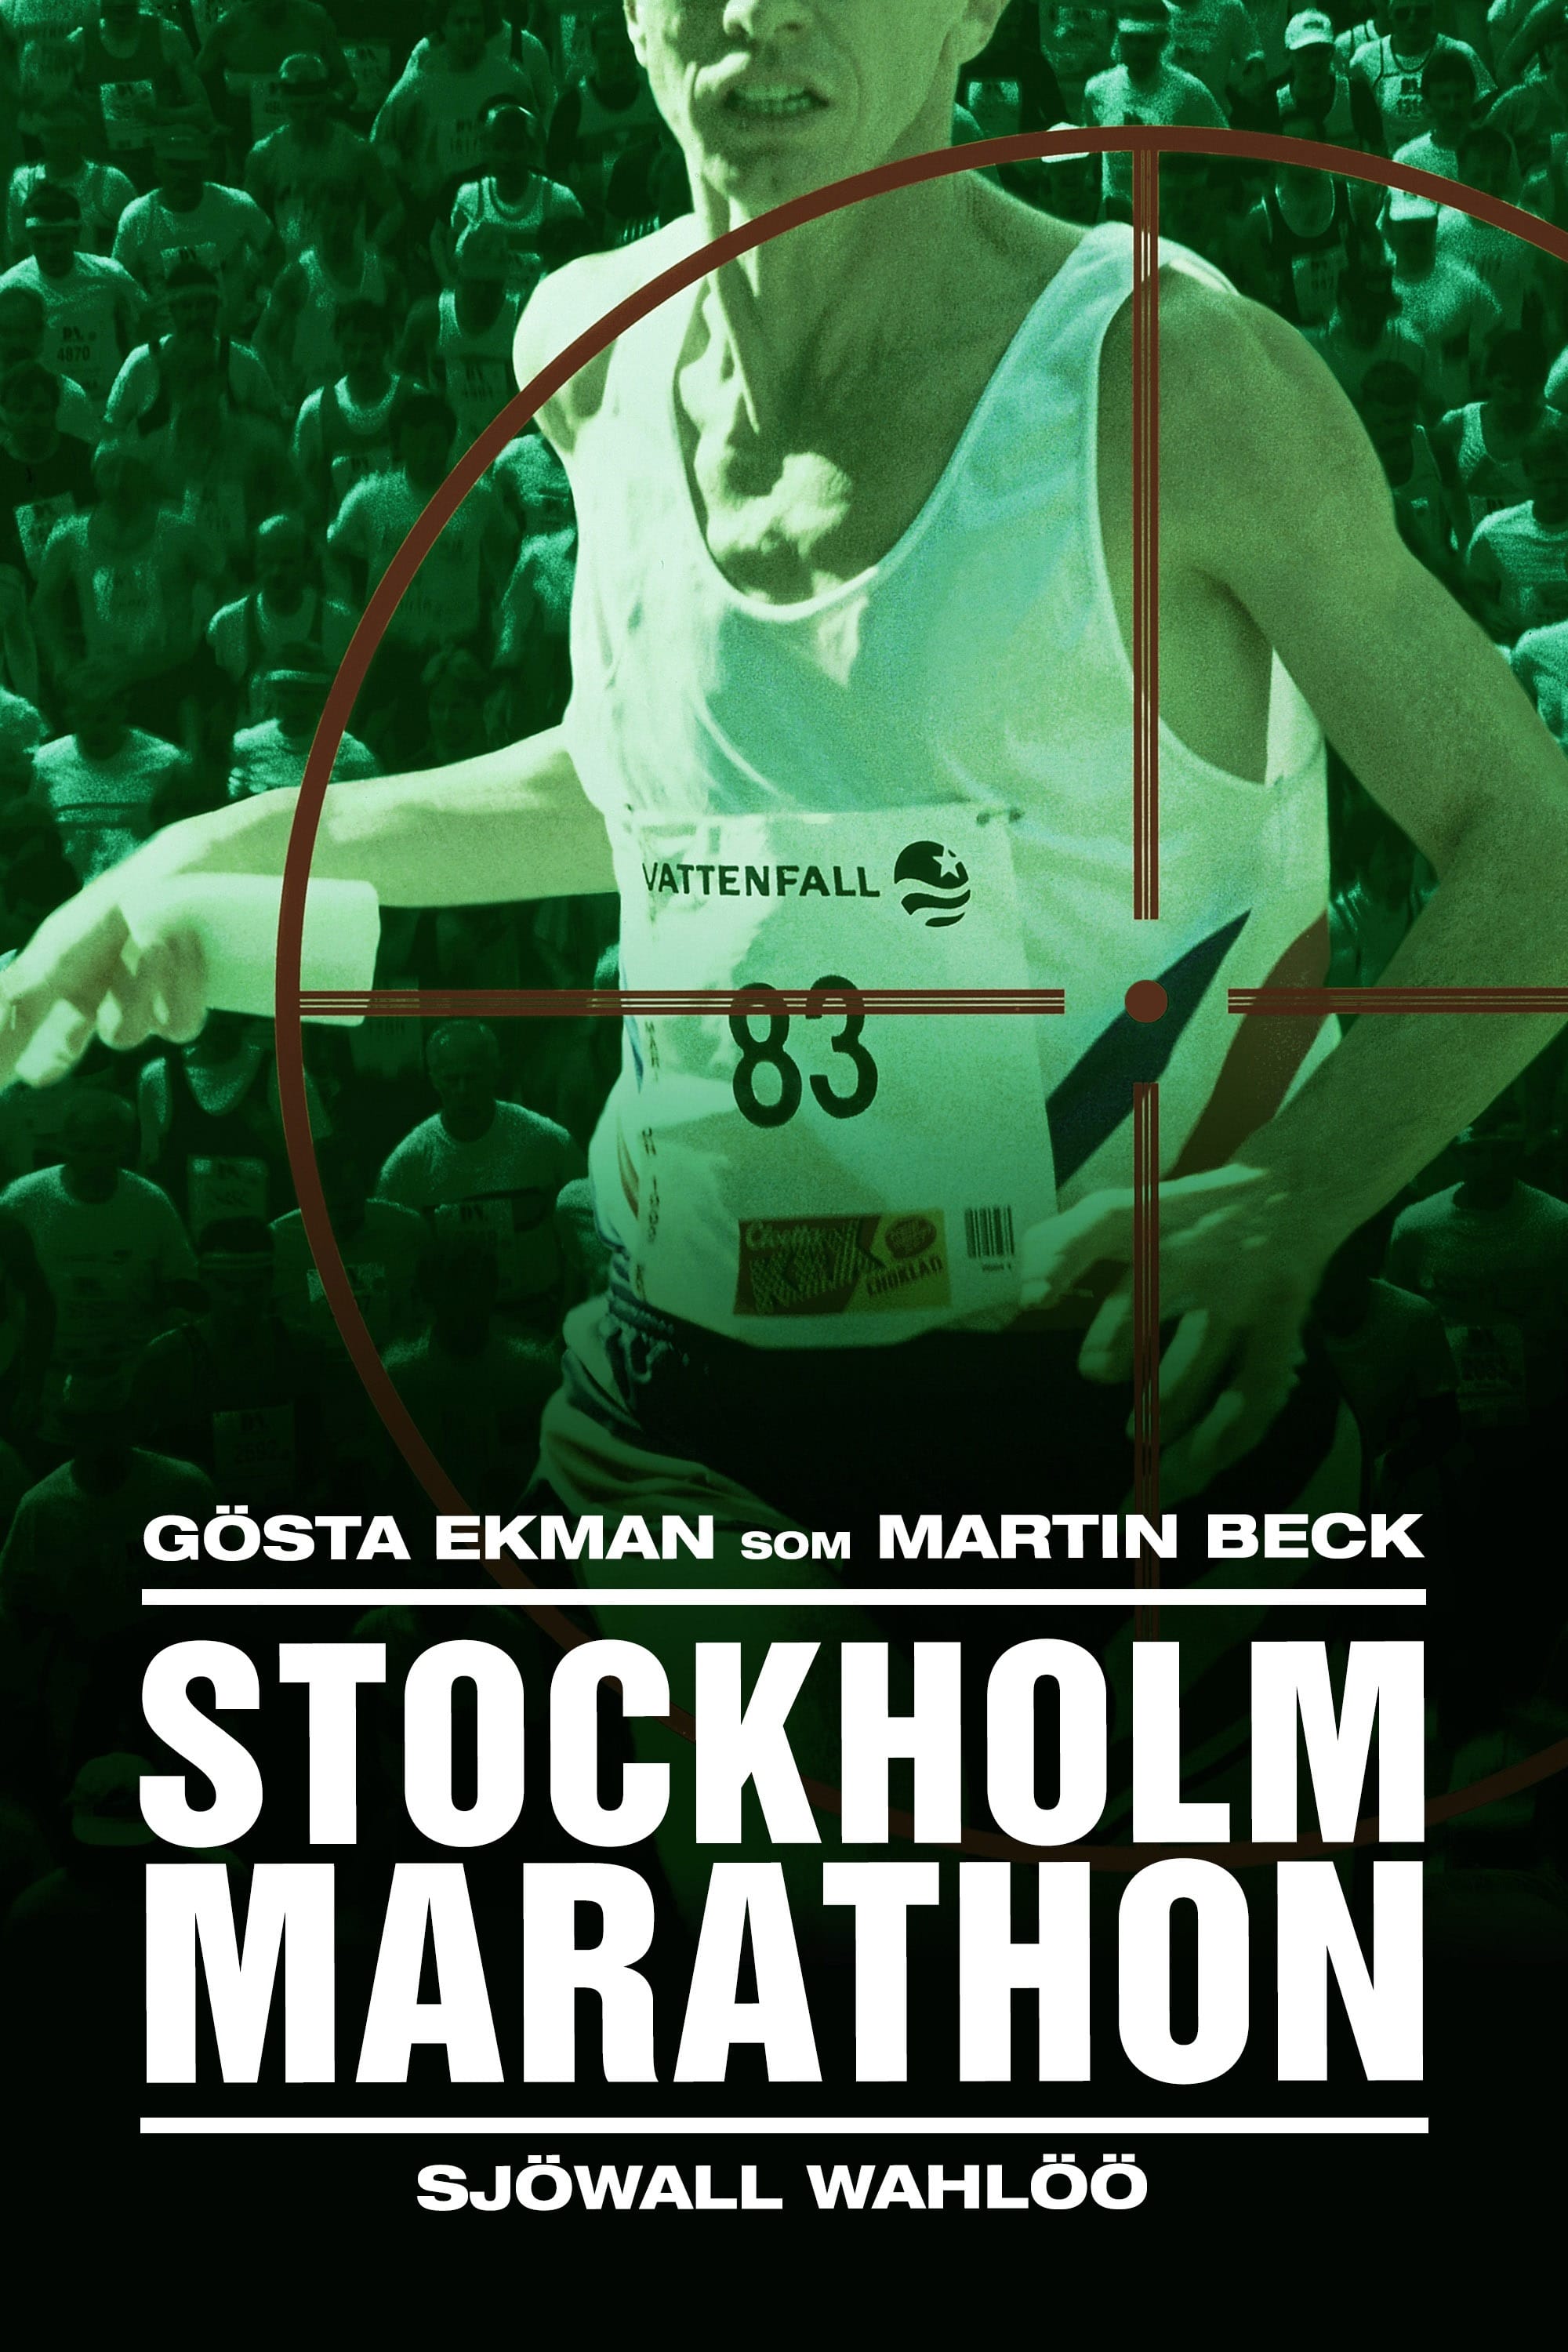 Bäckström: Series 1 (DVD, 2020) Widescreen Kjell Bergqvist